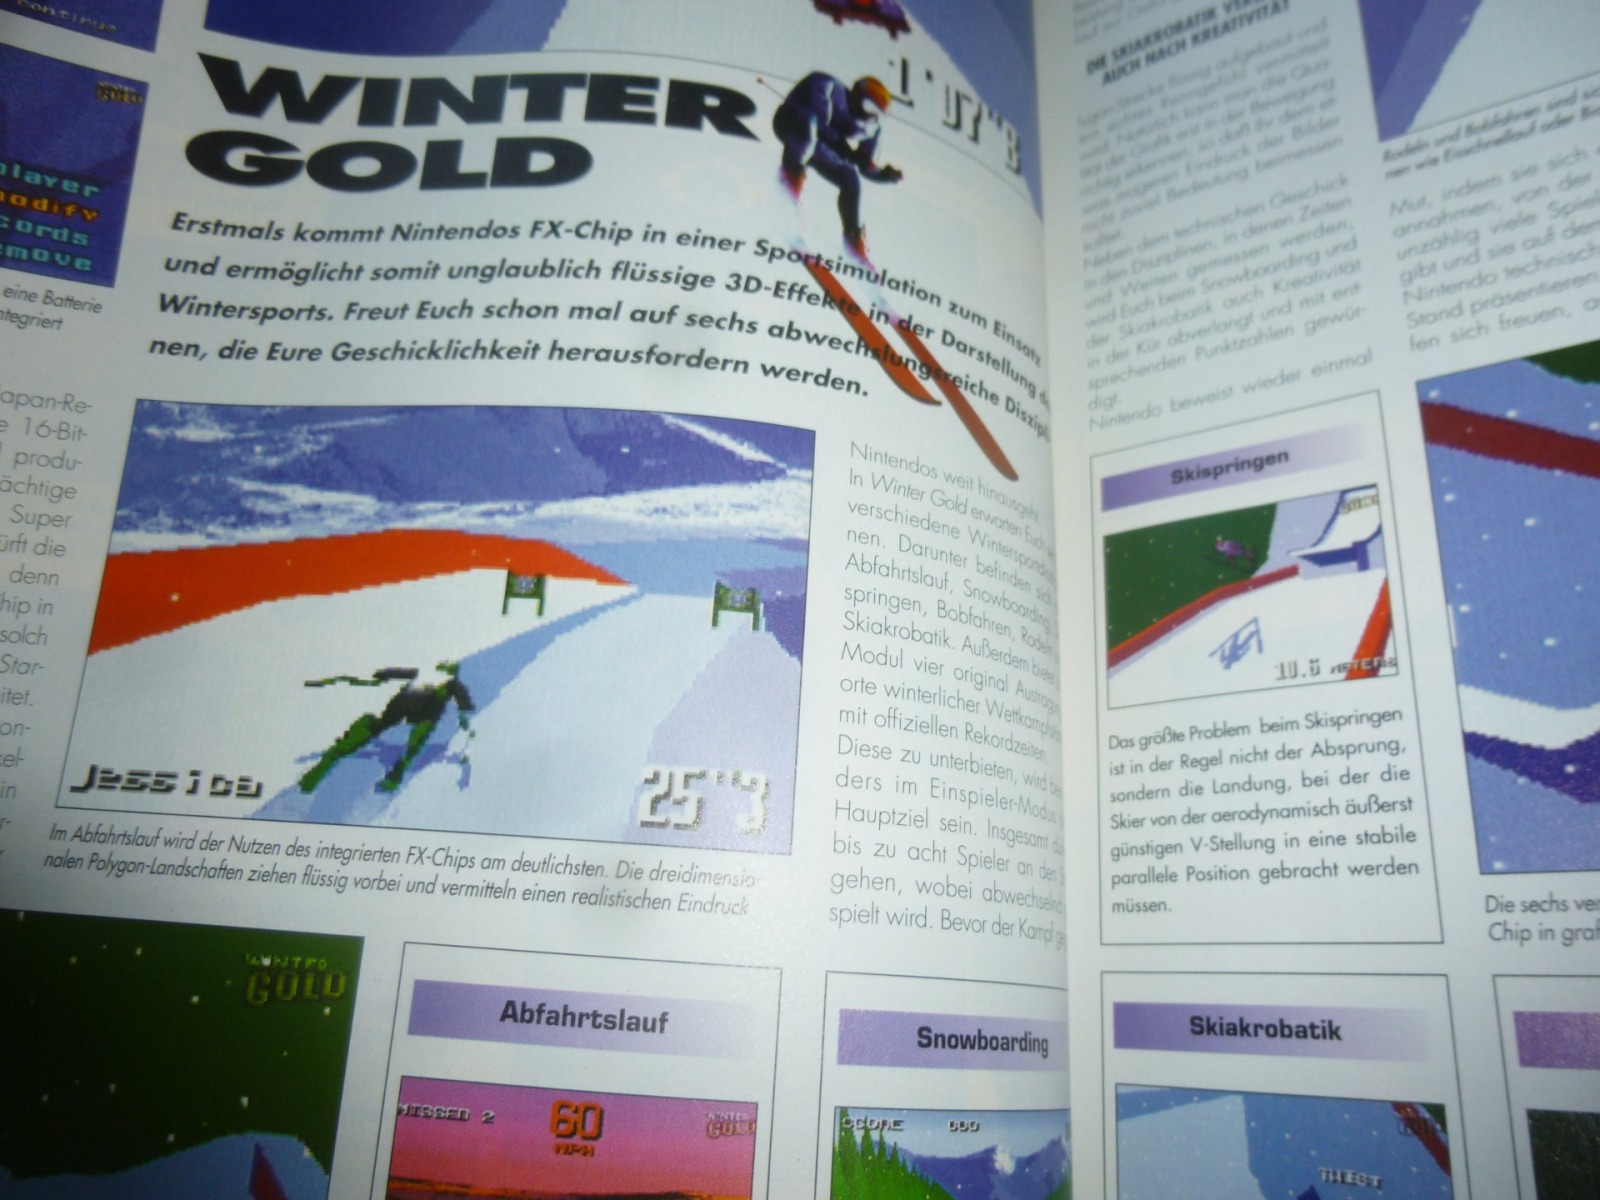 TOTAL Das unabhängige Magazin - 100% Nintendo - Ausgabe 10/96 1996 11